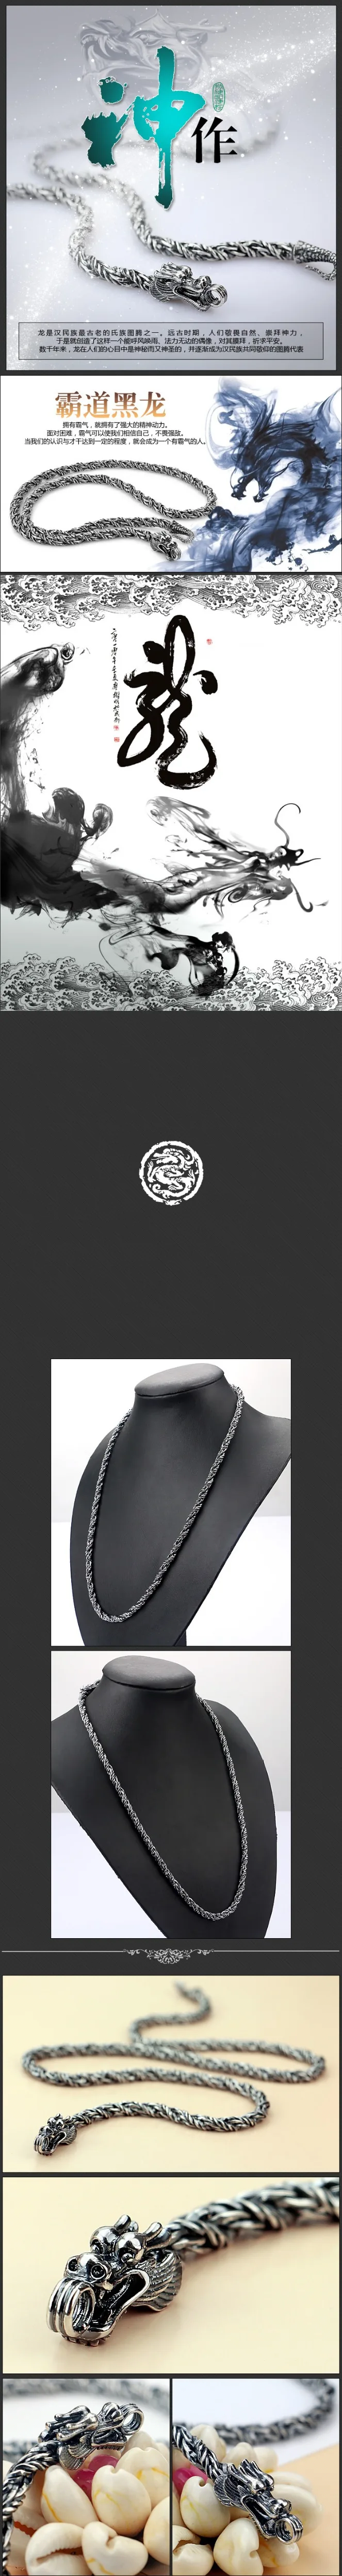 Ретро стиль 925, тайское серебряное ожерелье для мужчин, стильный дизайн, цельное серебряное ожерелье, мужские модели, популярные ювелирные изделия, 5 мм, 56 см размер